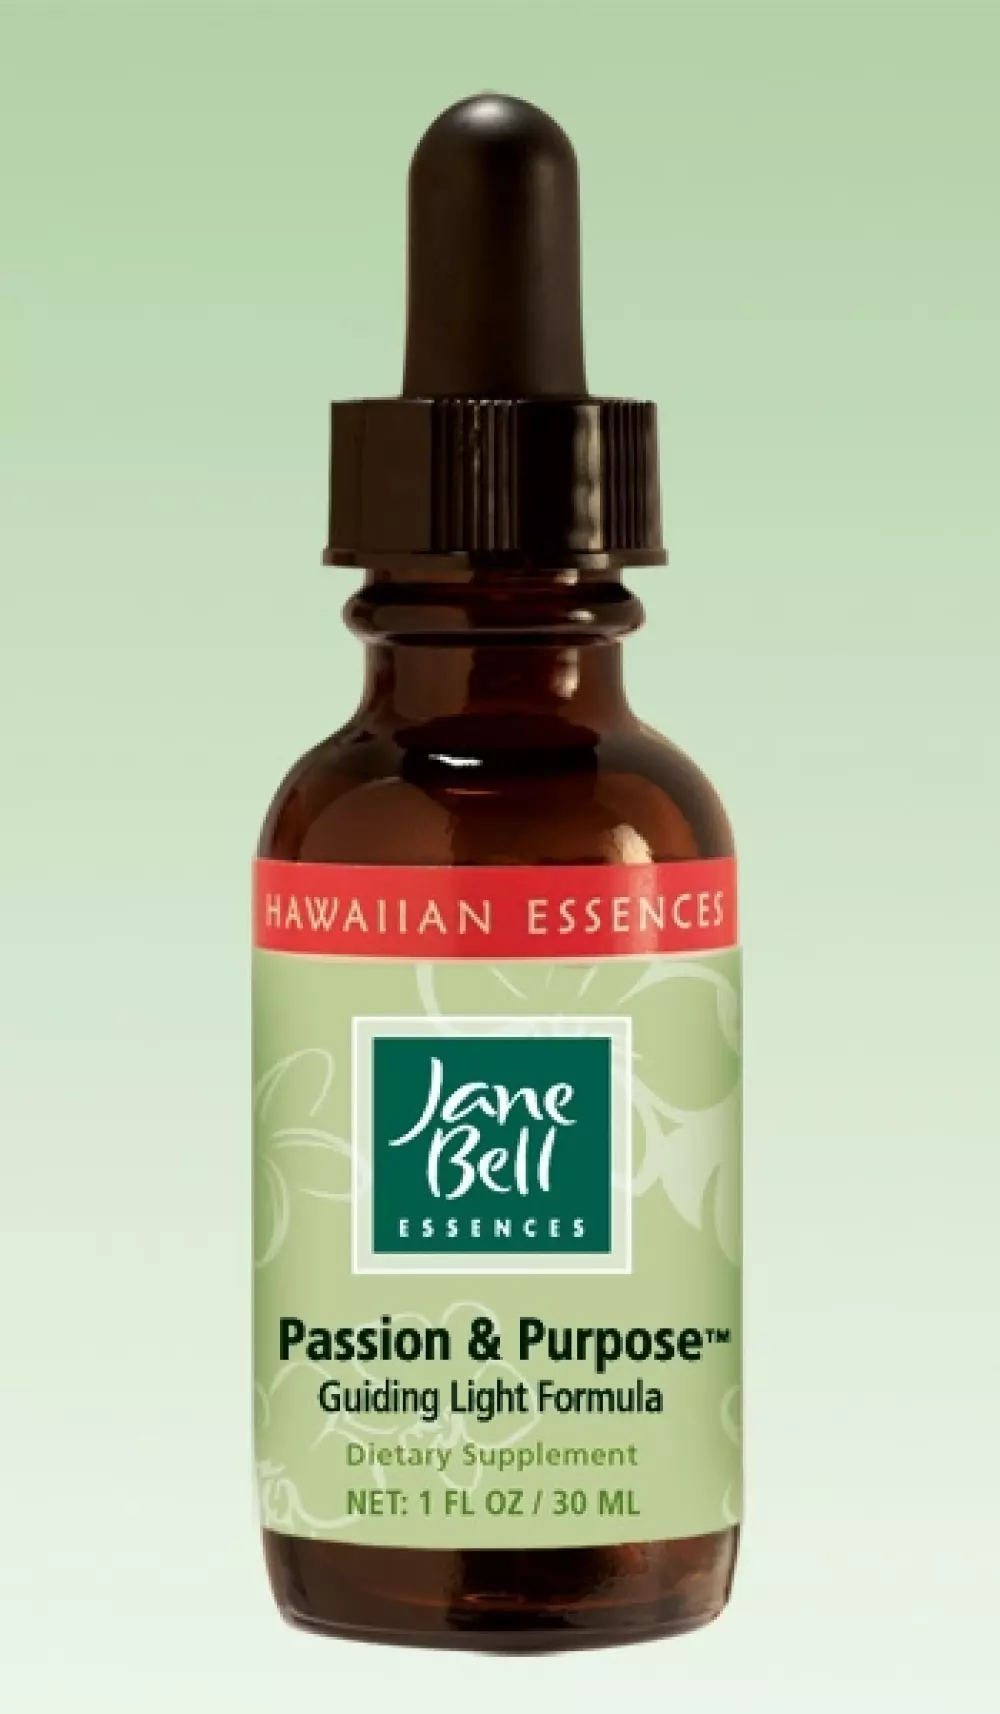 Hawaiian Essences - Passion & Purpose 30 ml, Velvære & røkelse, Essenser (Vibrasjonell medisin), Jane Bell Guiding Light Formula